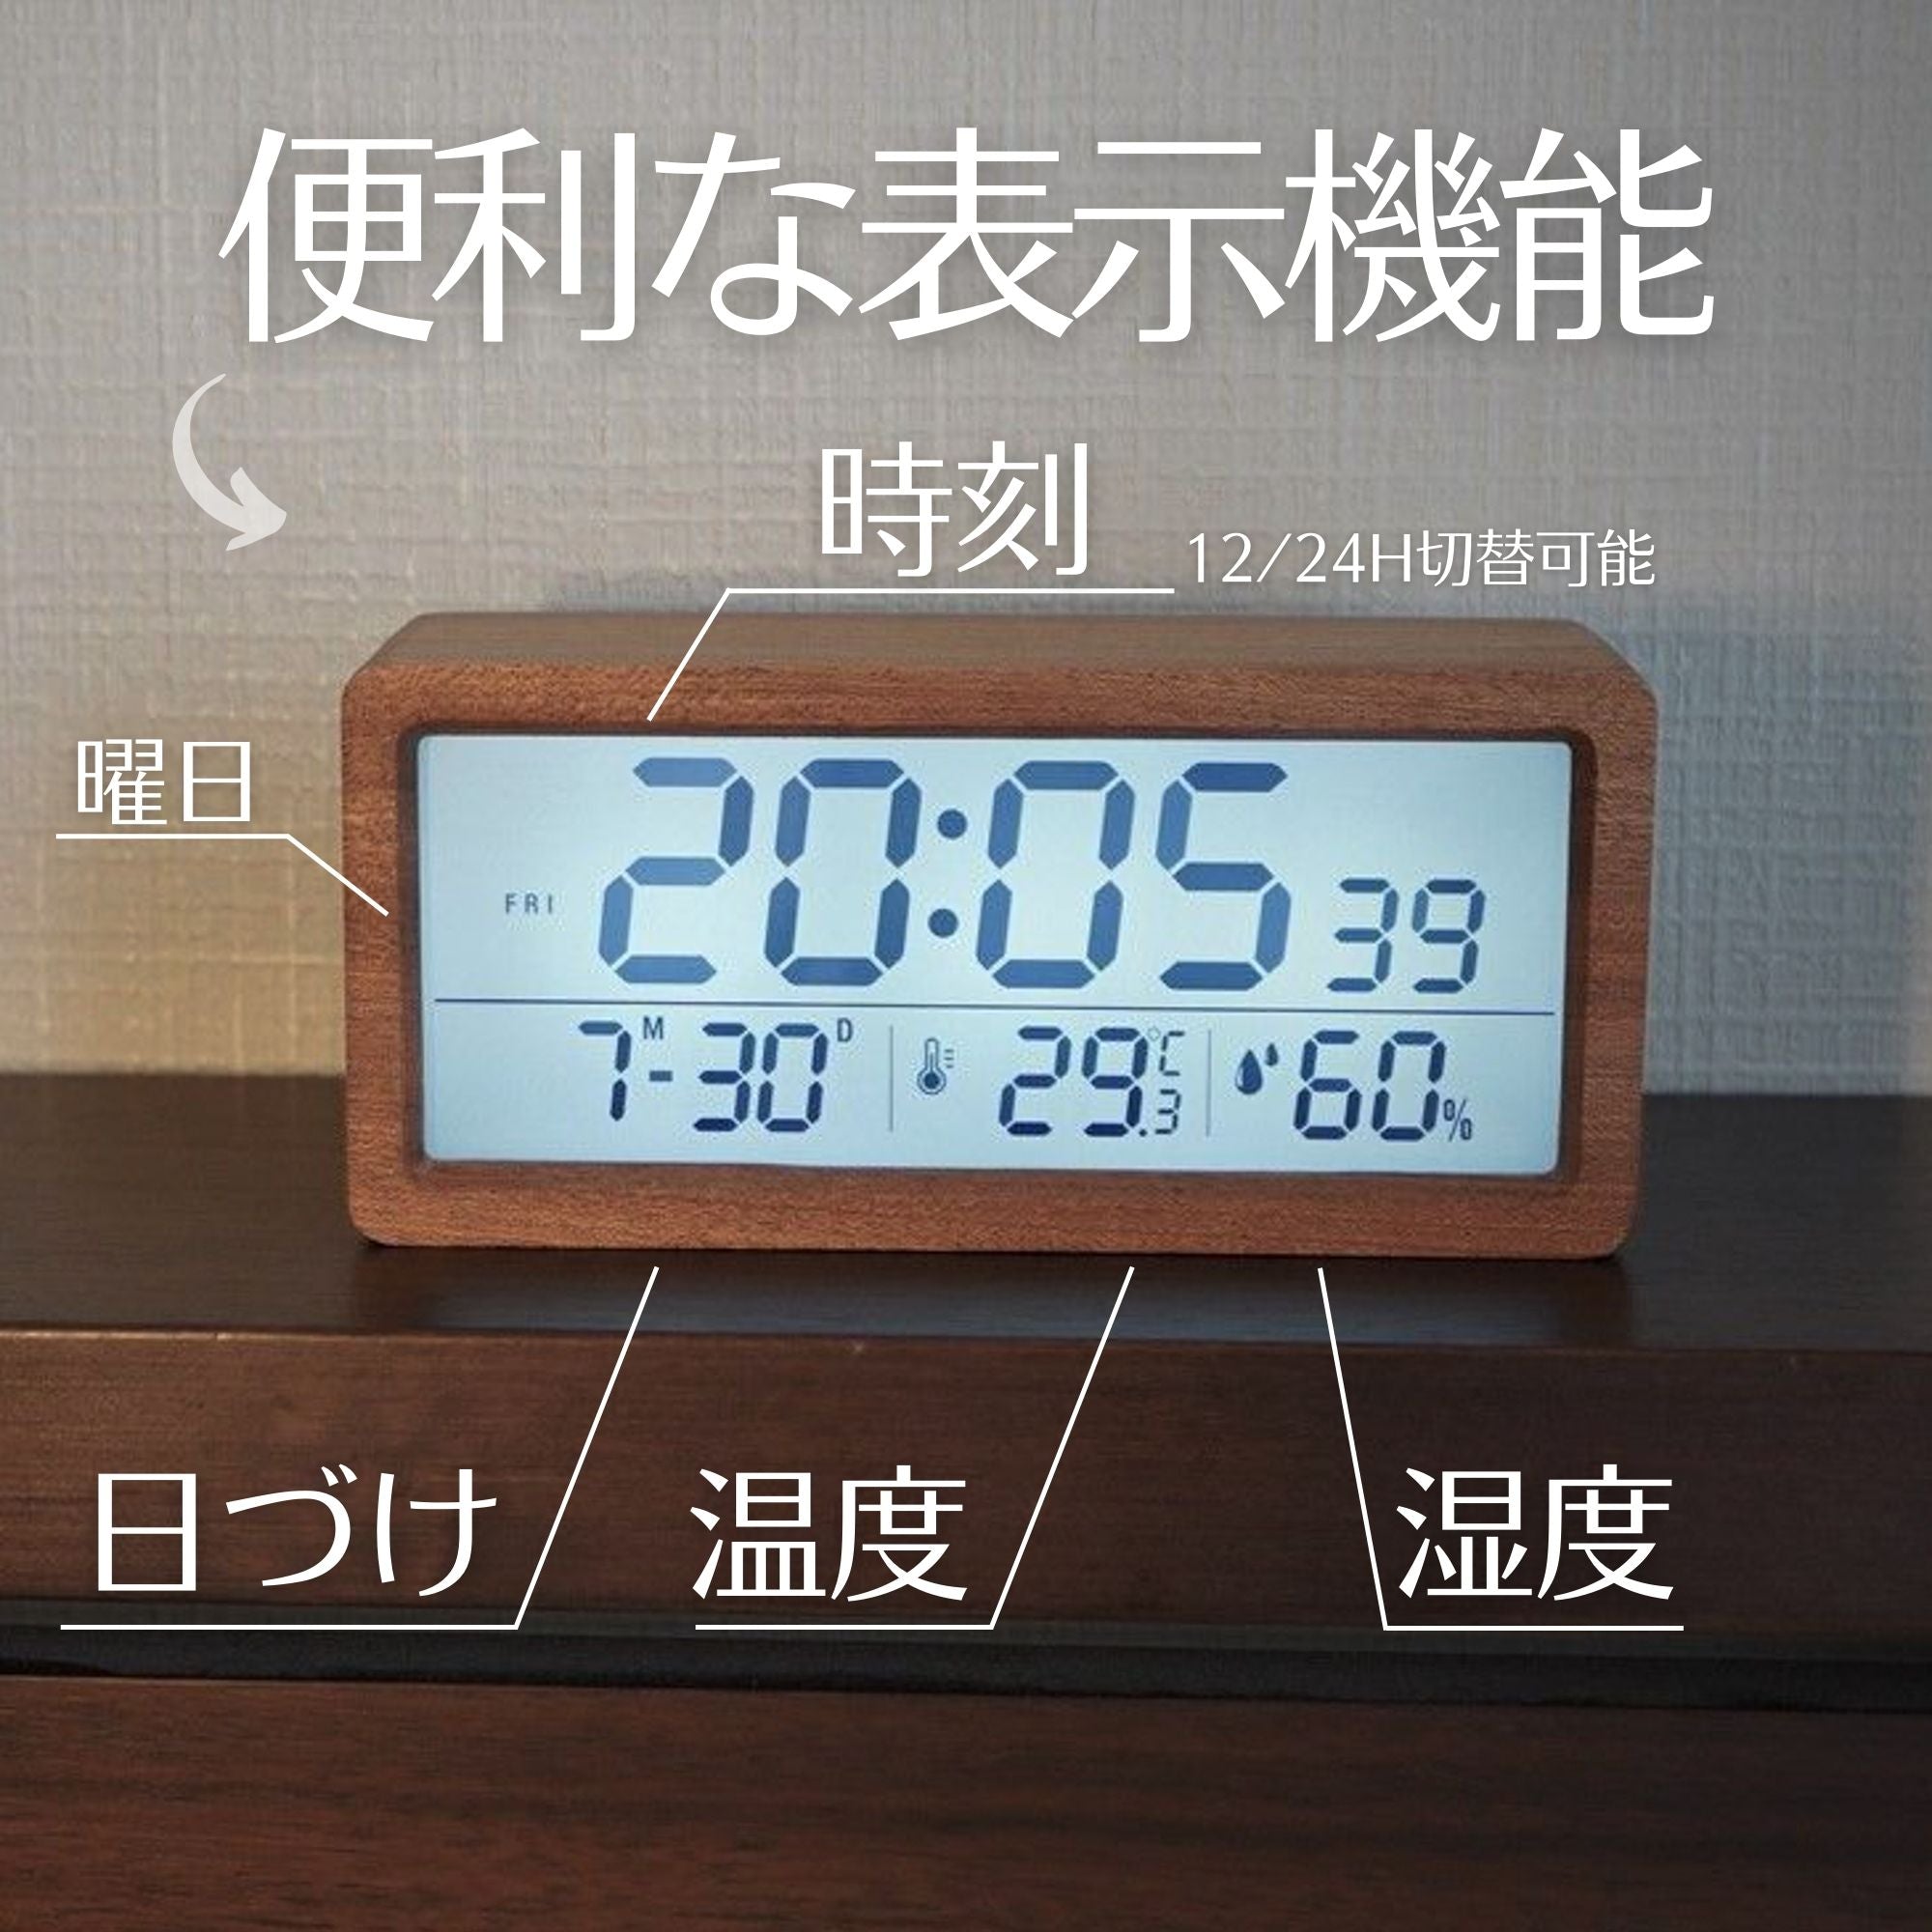 デジタル温湿度計 デジタル時計 置き時計 温度計 湿度計 アラーム